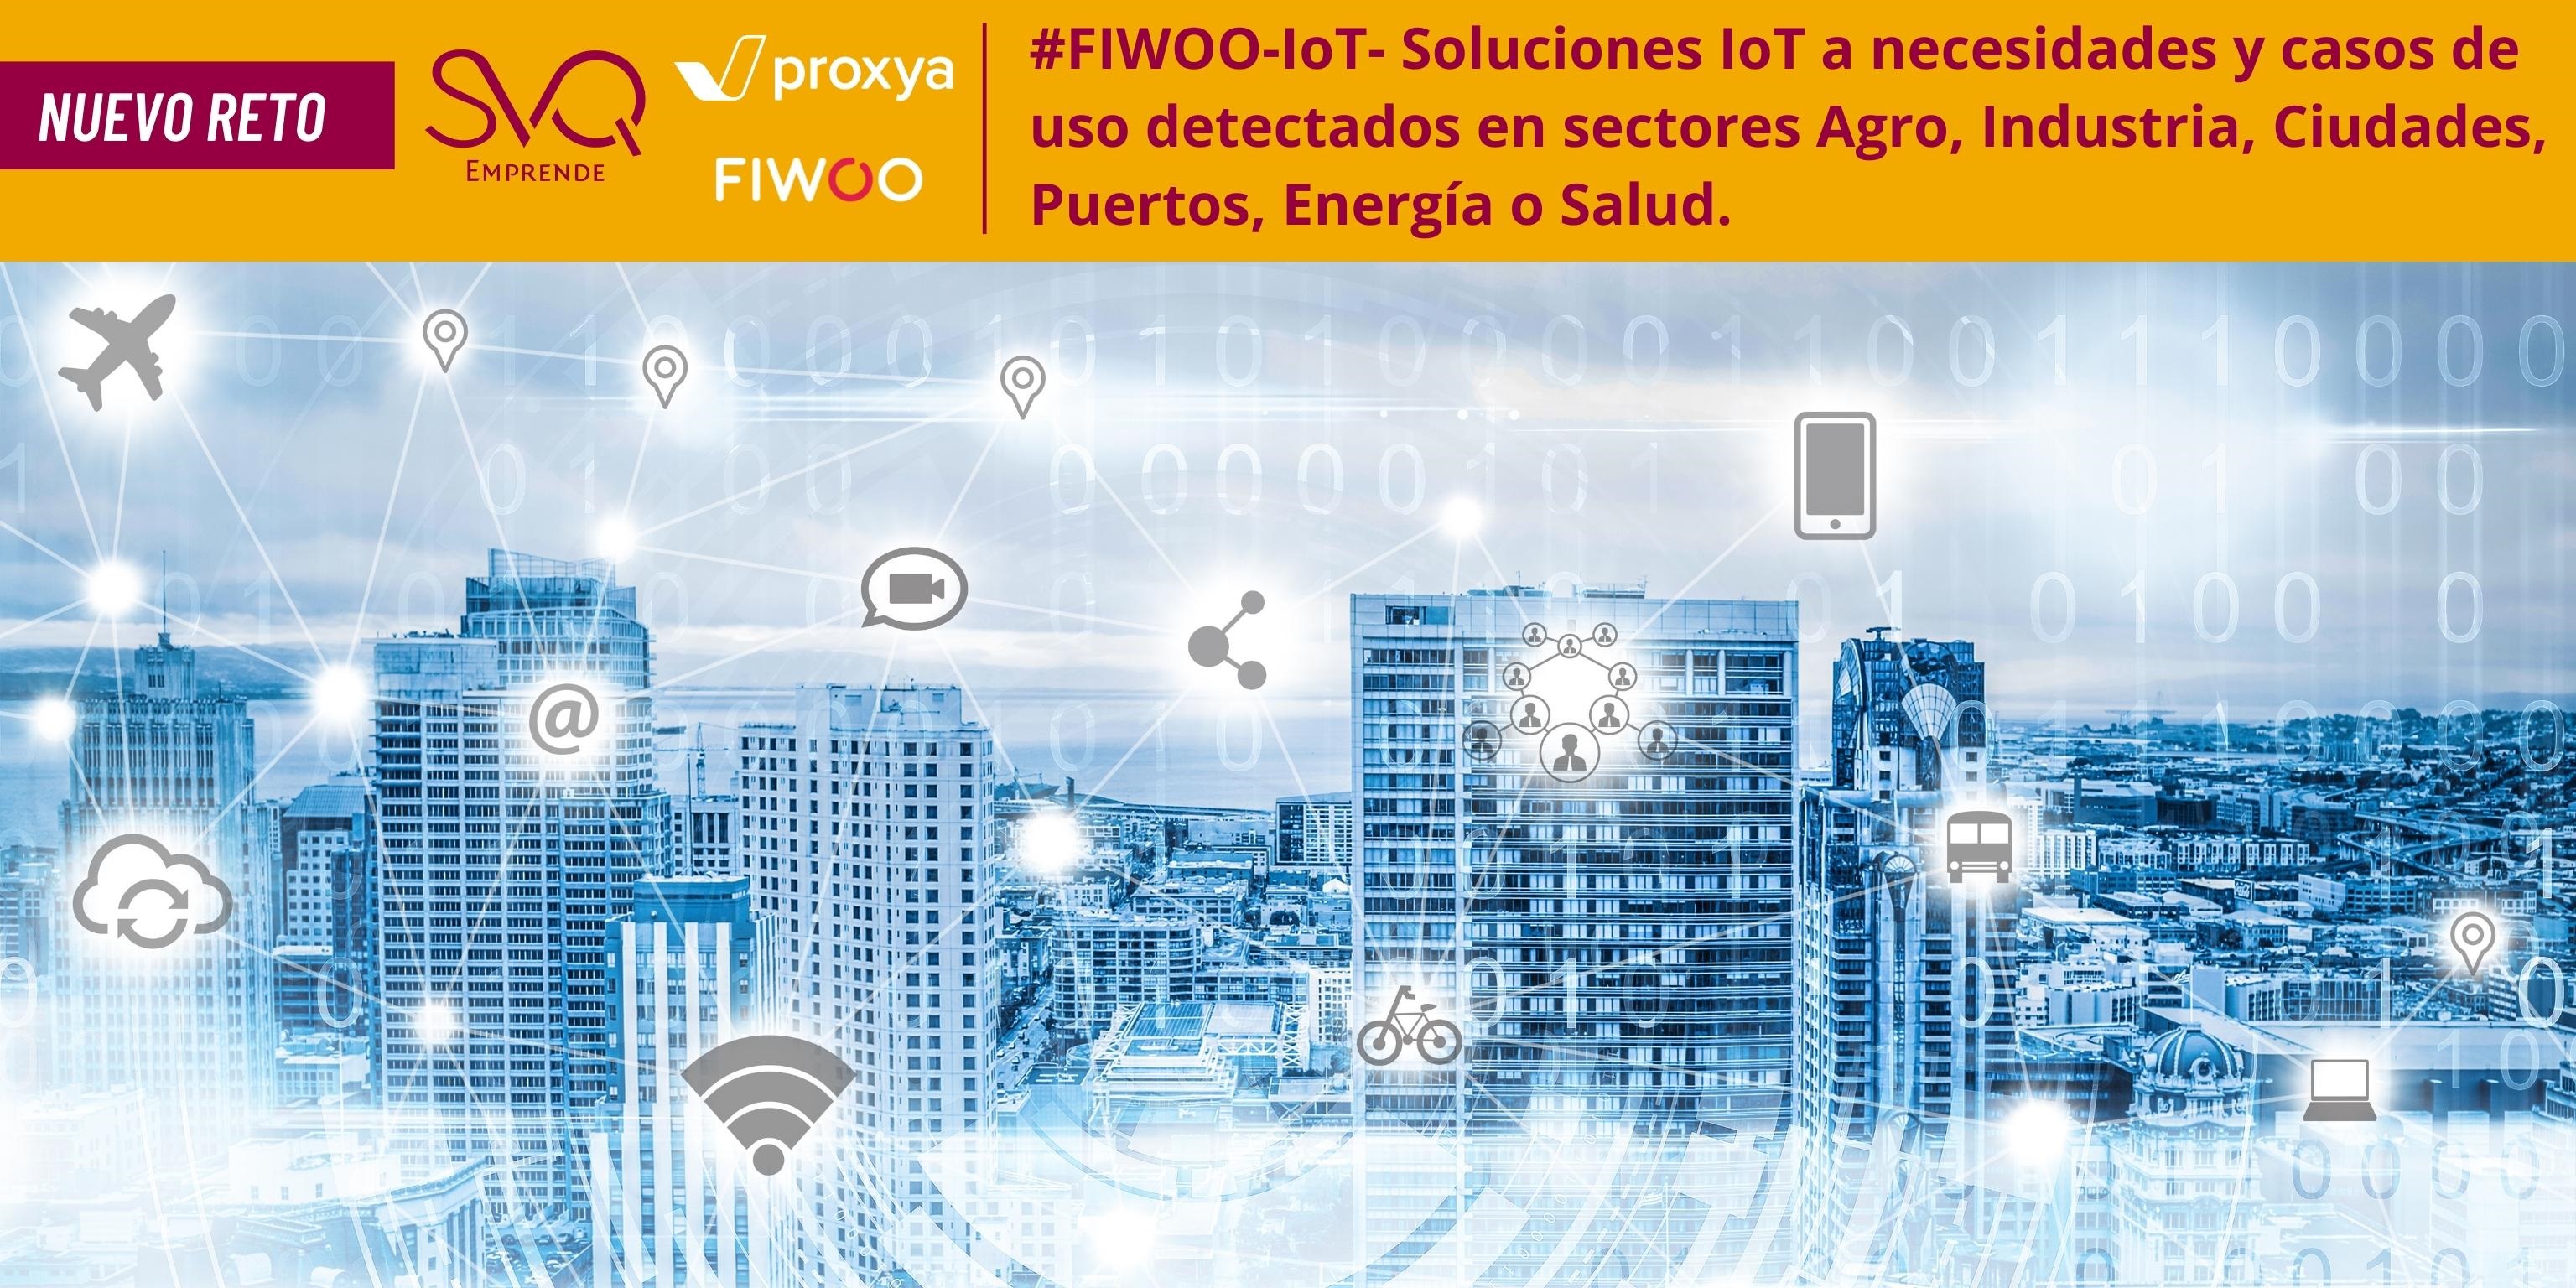 RETO #FIWOO-IoT Soluciones IoT a necesidades y casos de uso detectados en sectores Agro, Industria, Ciudades, Puertos, Energía o Salud.